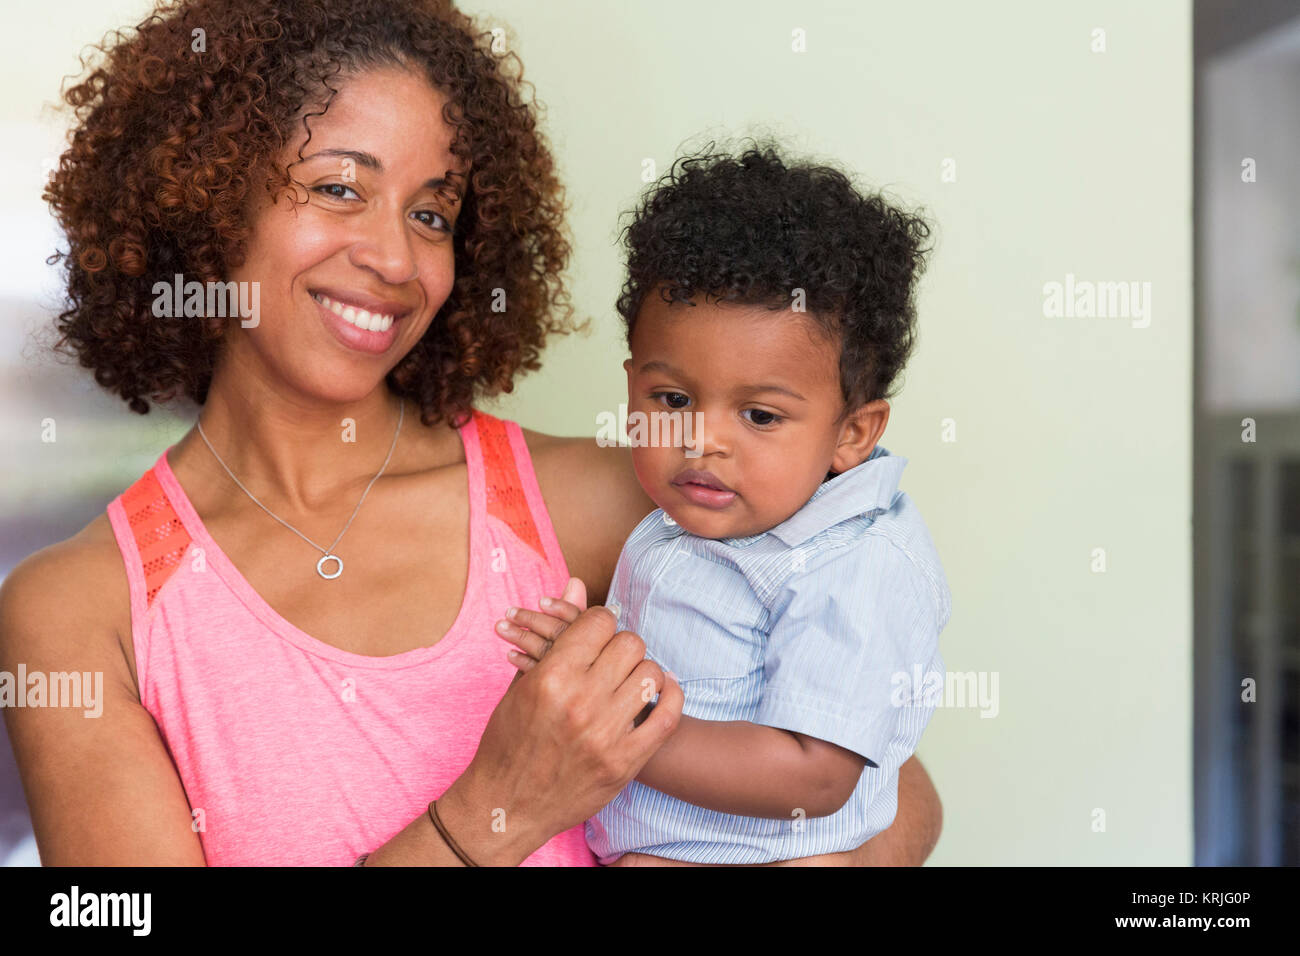 Retrato de raza mixta sonriente madre e hijo Foto de stock